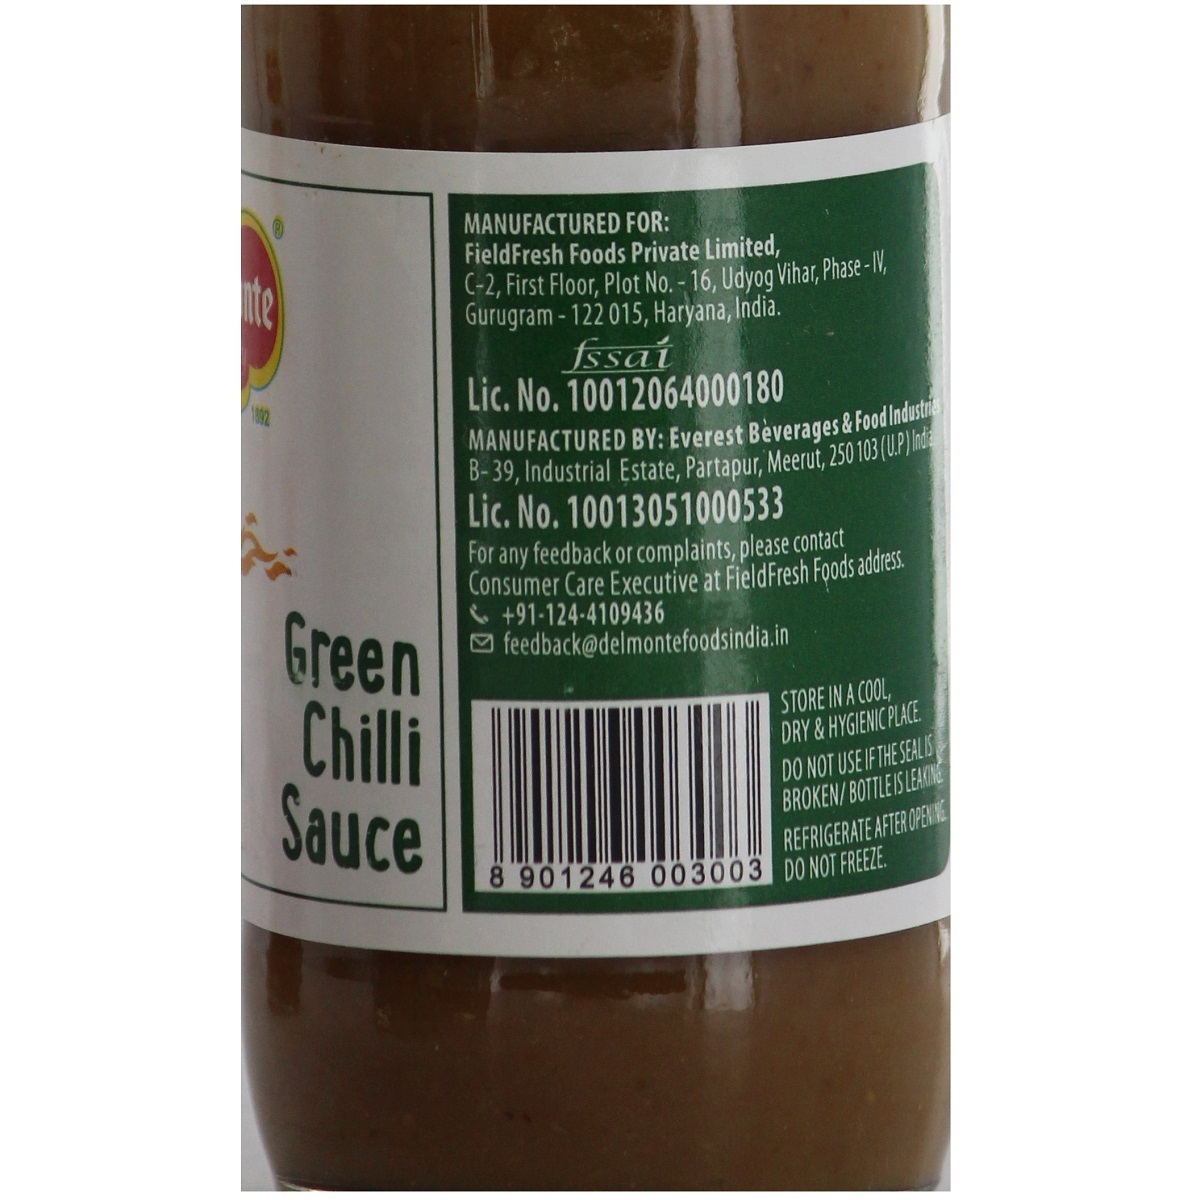 Del Monte Sauce Green Chilli 190g